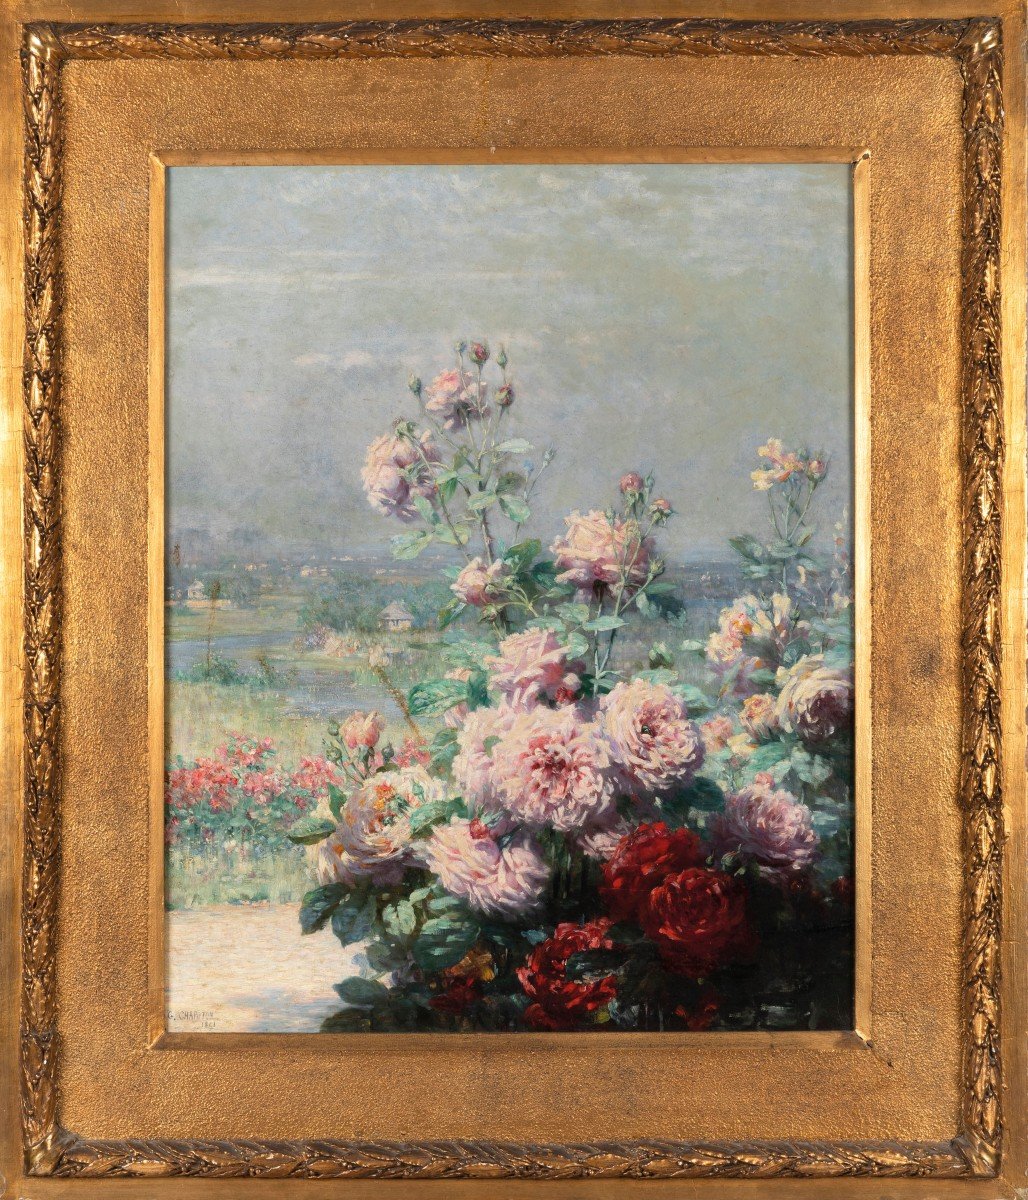 Dipinto olio su tela,paesaggio con fiori